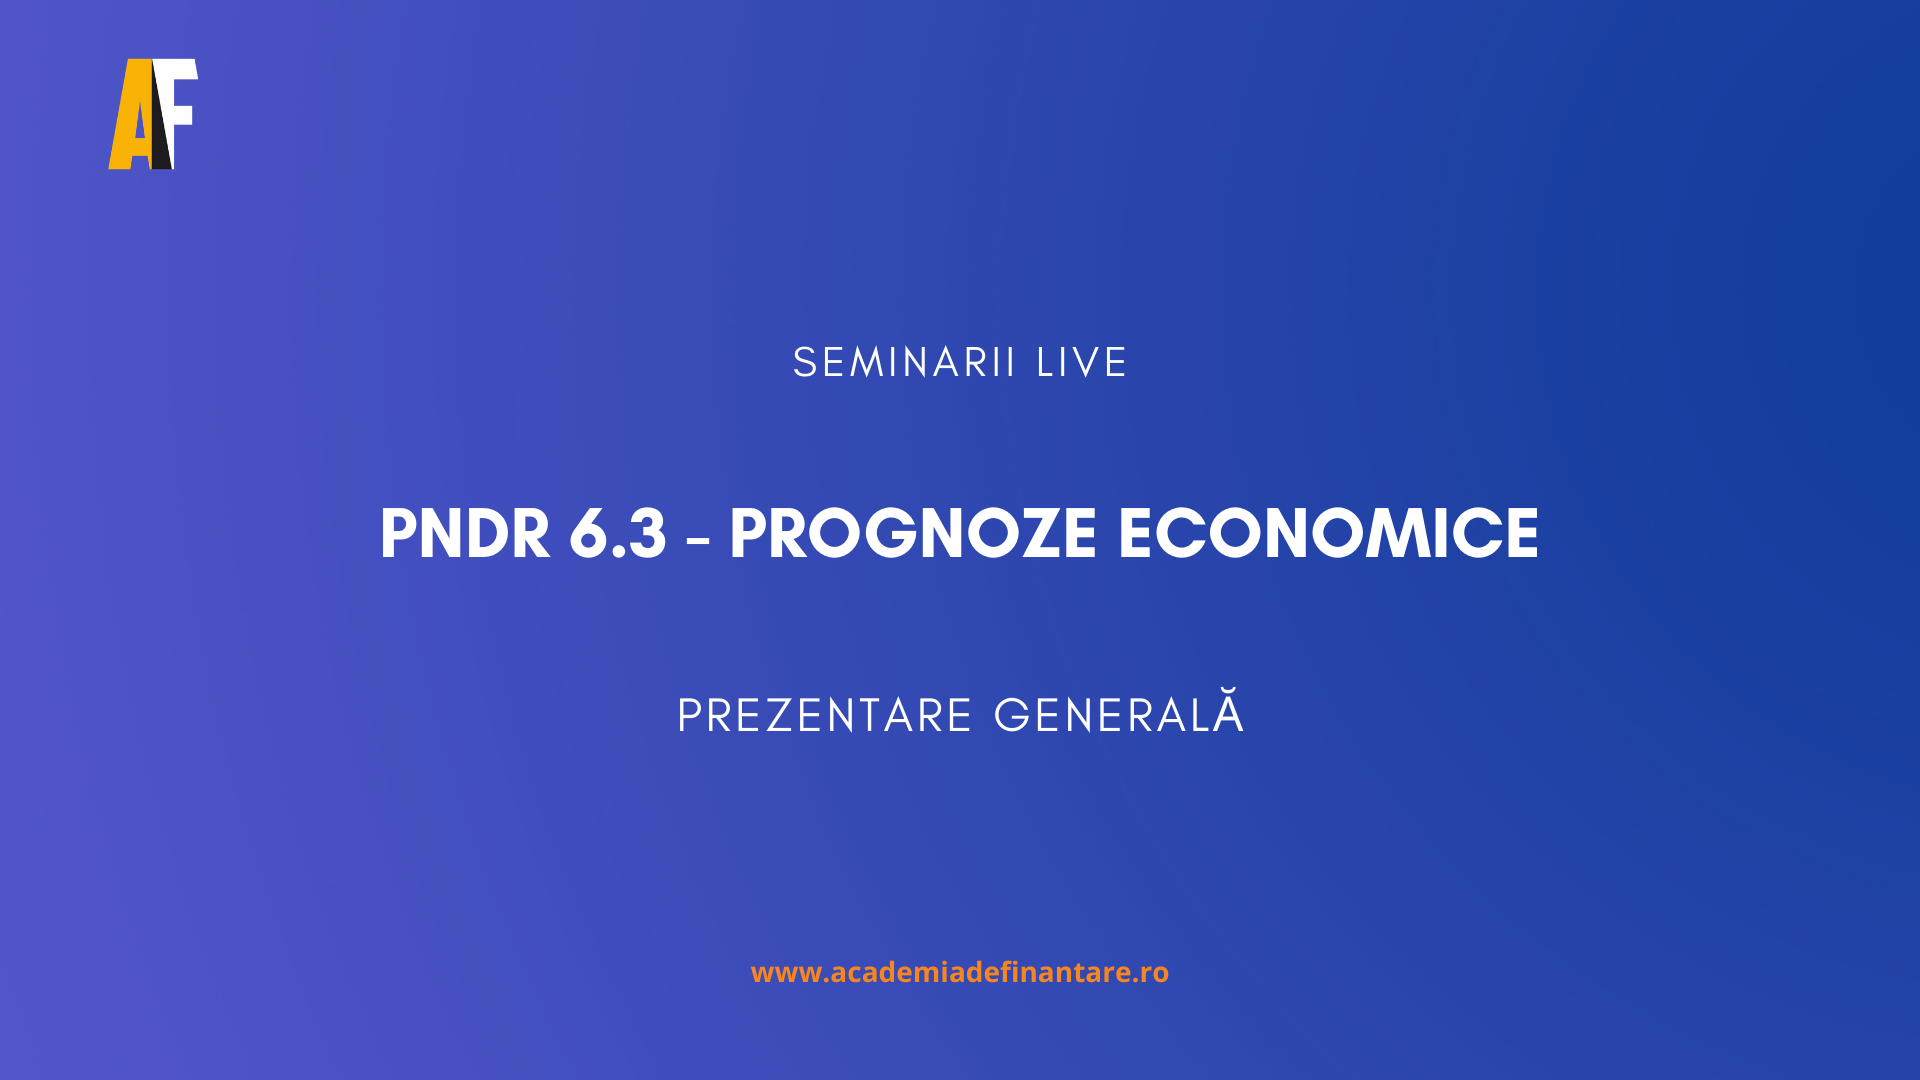 PNDR 6.3 Prognoze economice